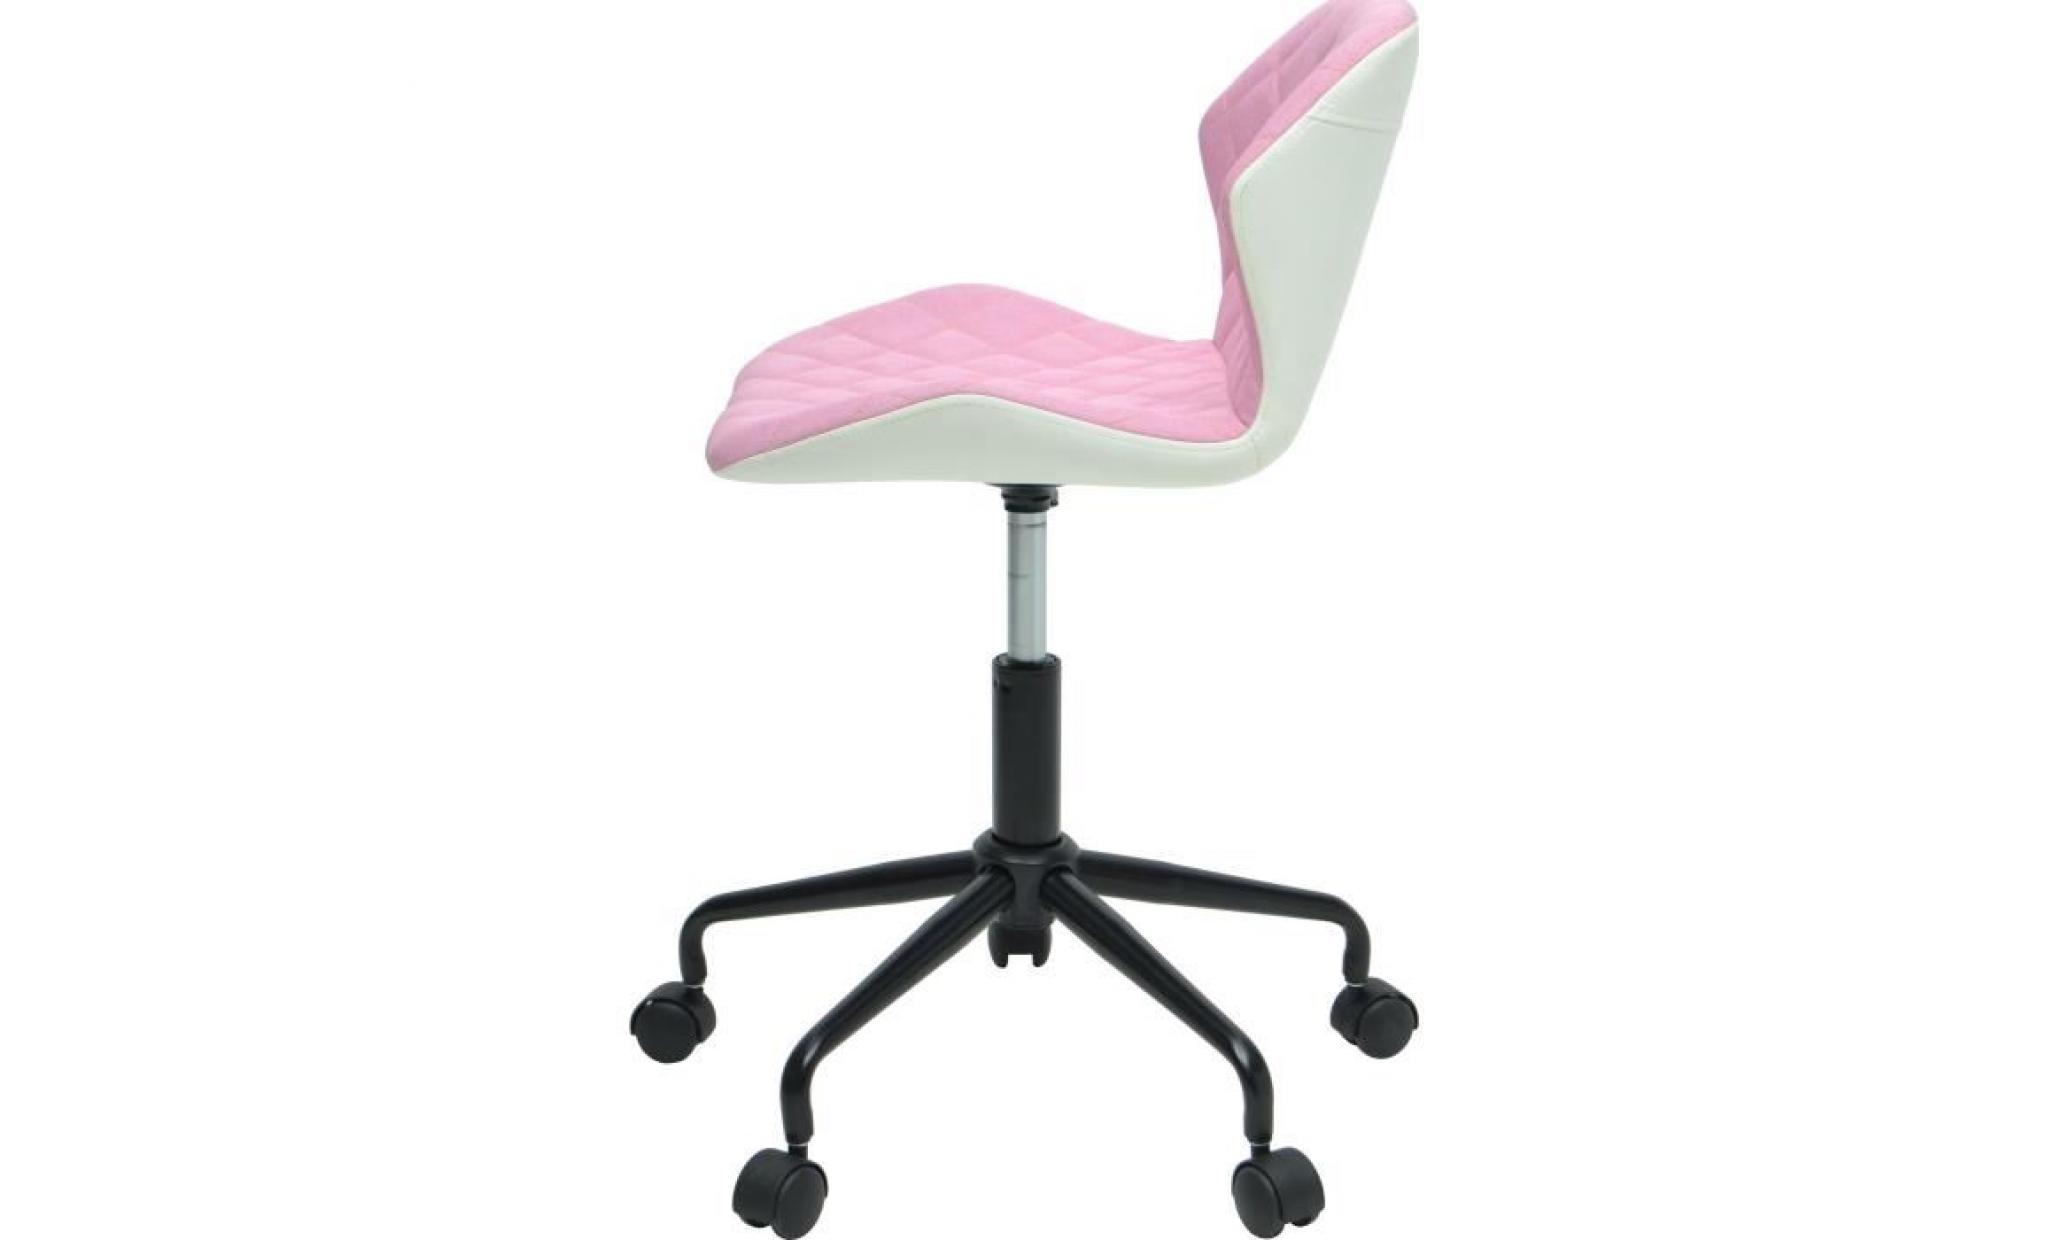 squate chaise de bureau   tissu et simili   rose pâle   style industriel   l 42 x p 35 cm pas cher